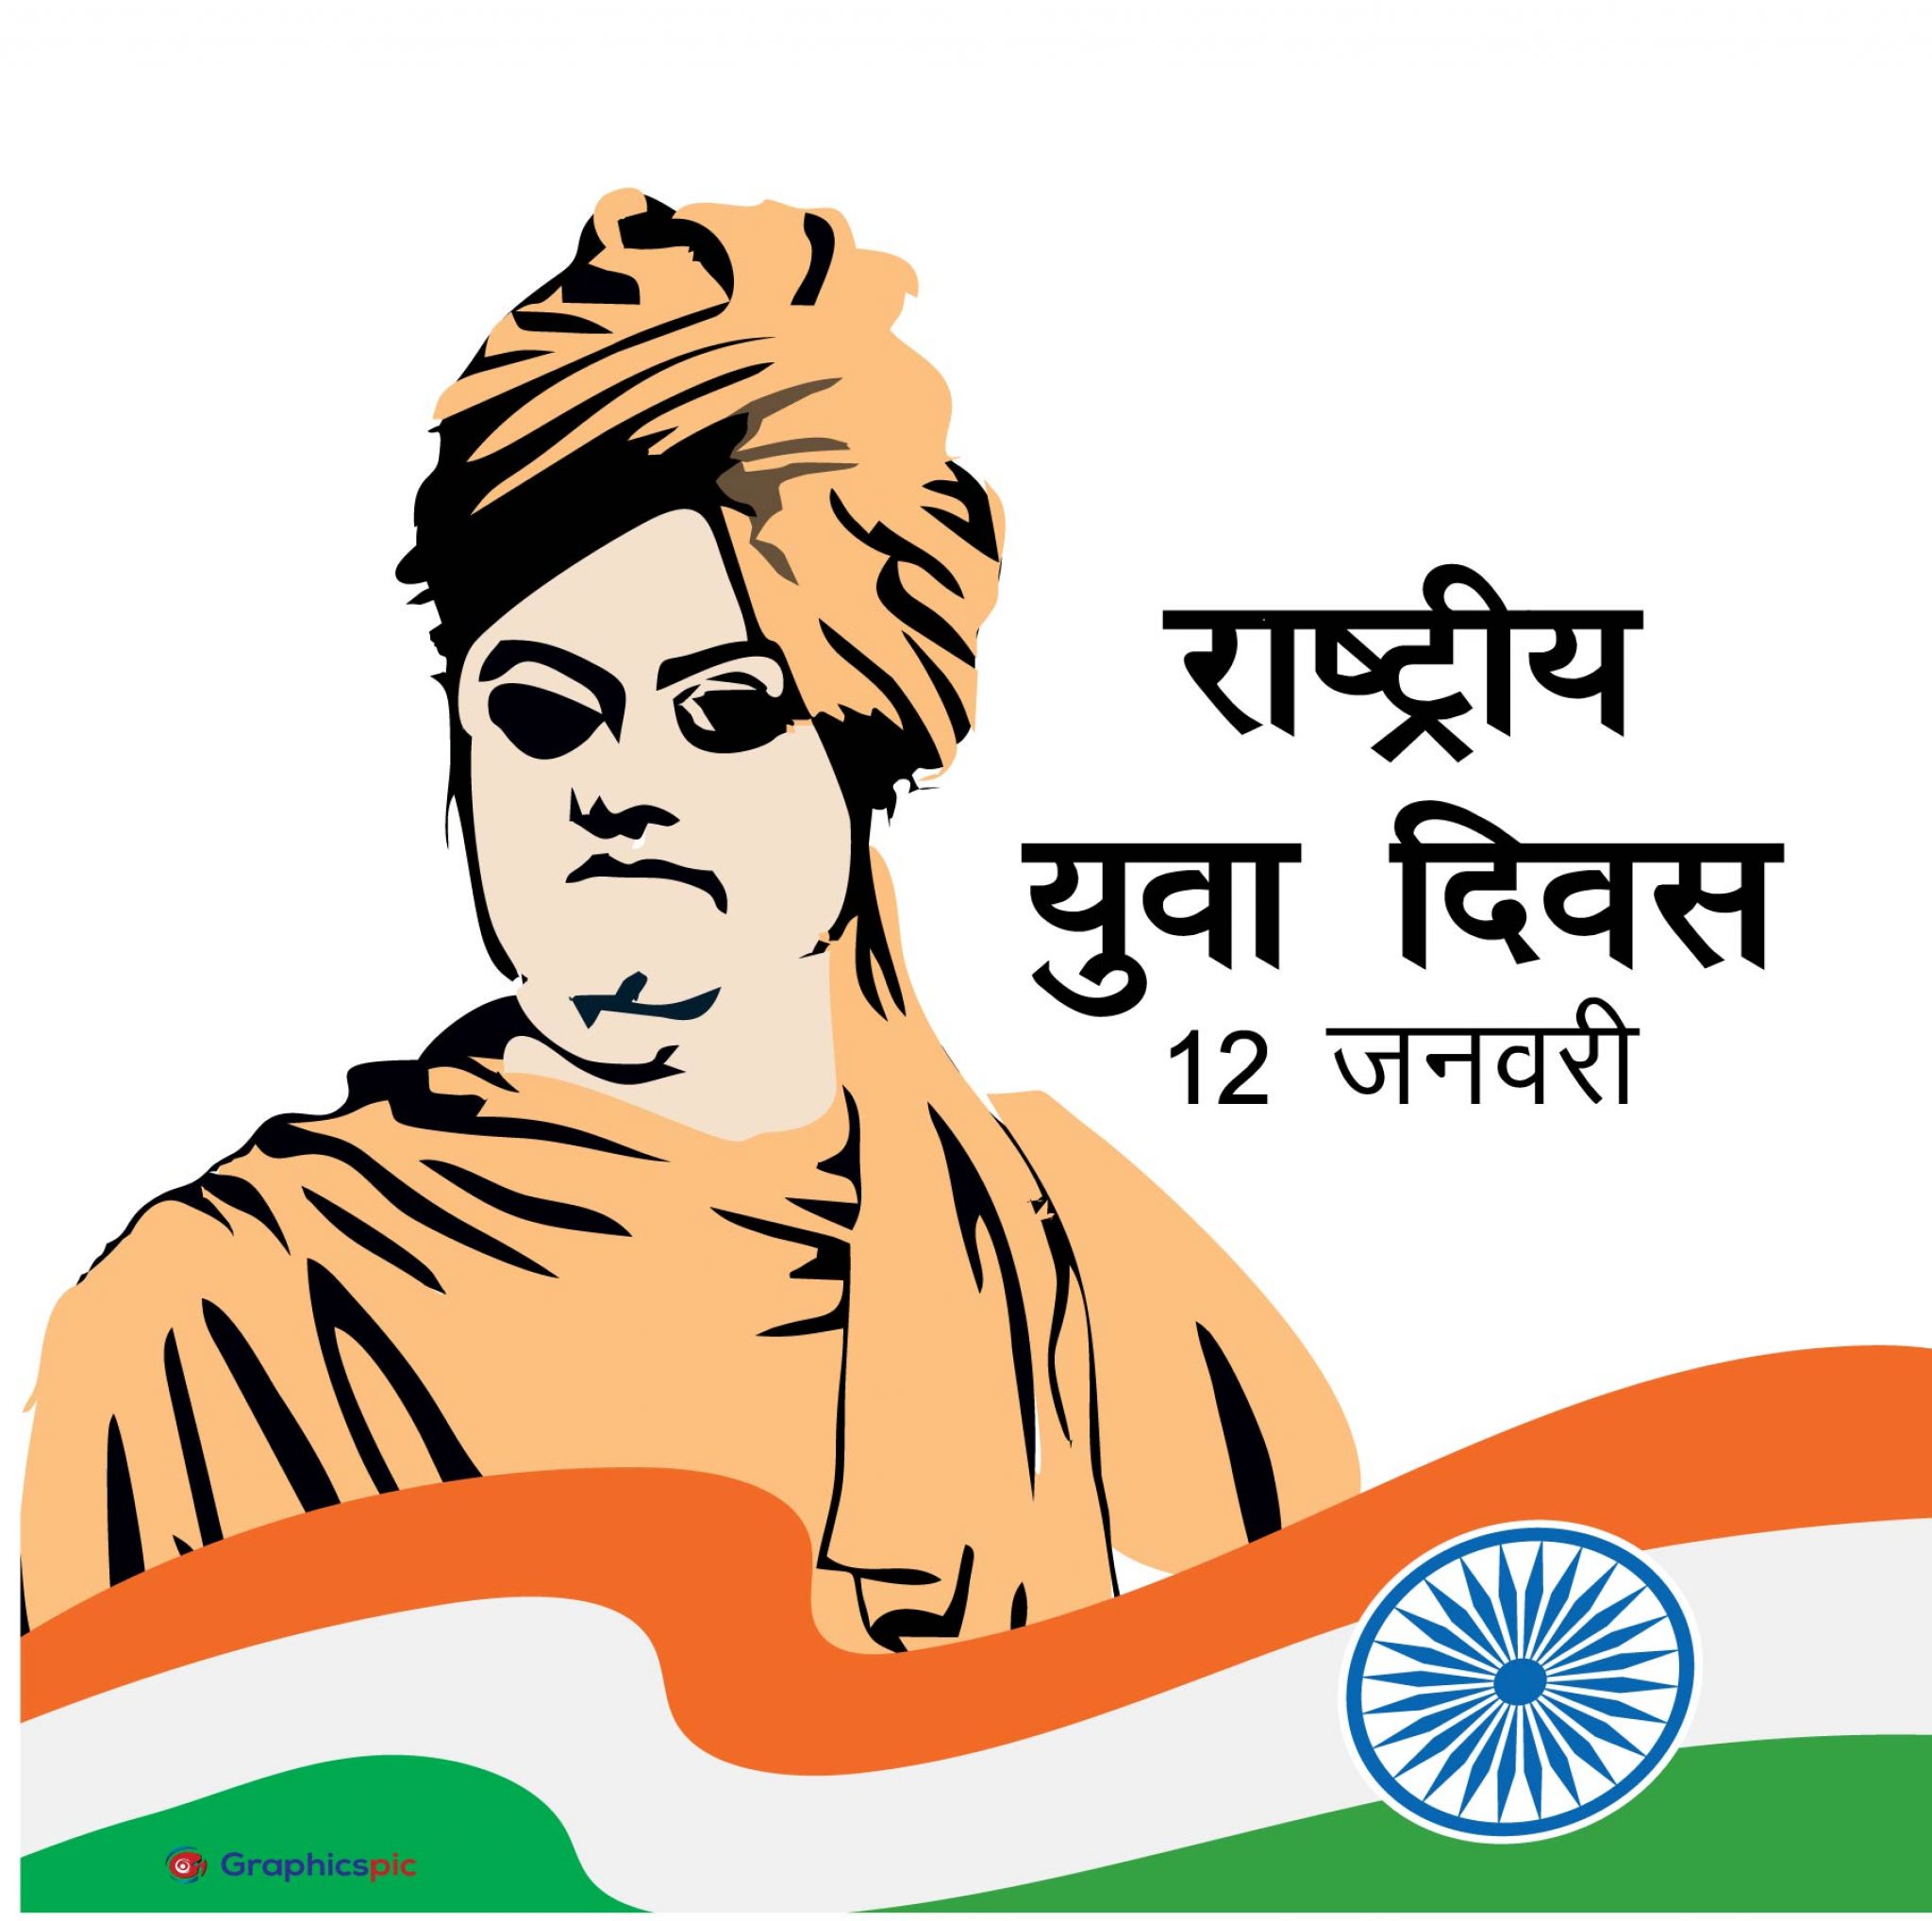 Swami Vivekananda Jayanti and National Youth Day illustration in Hindi ...